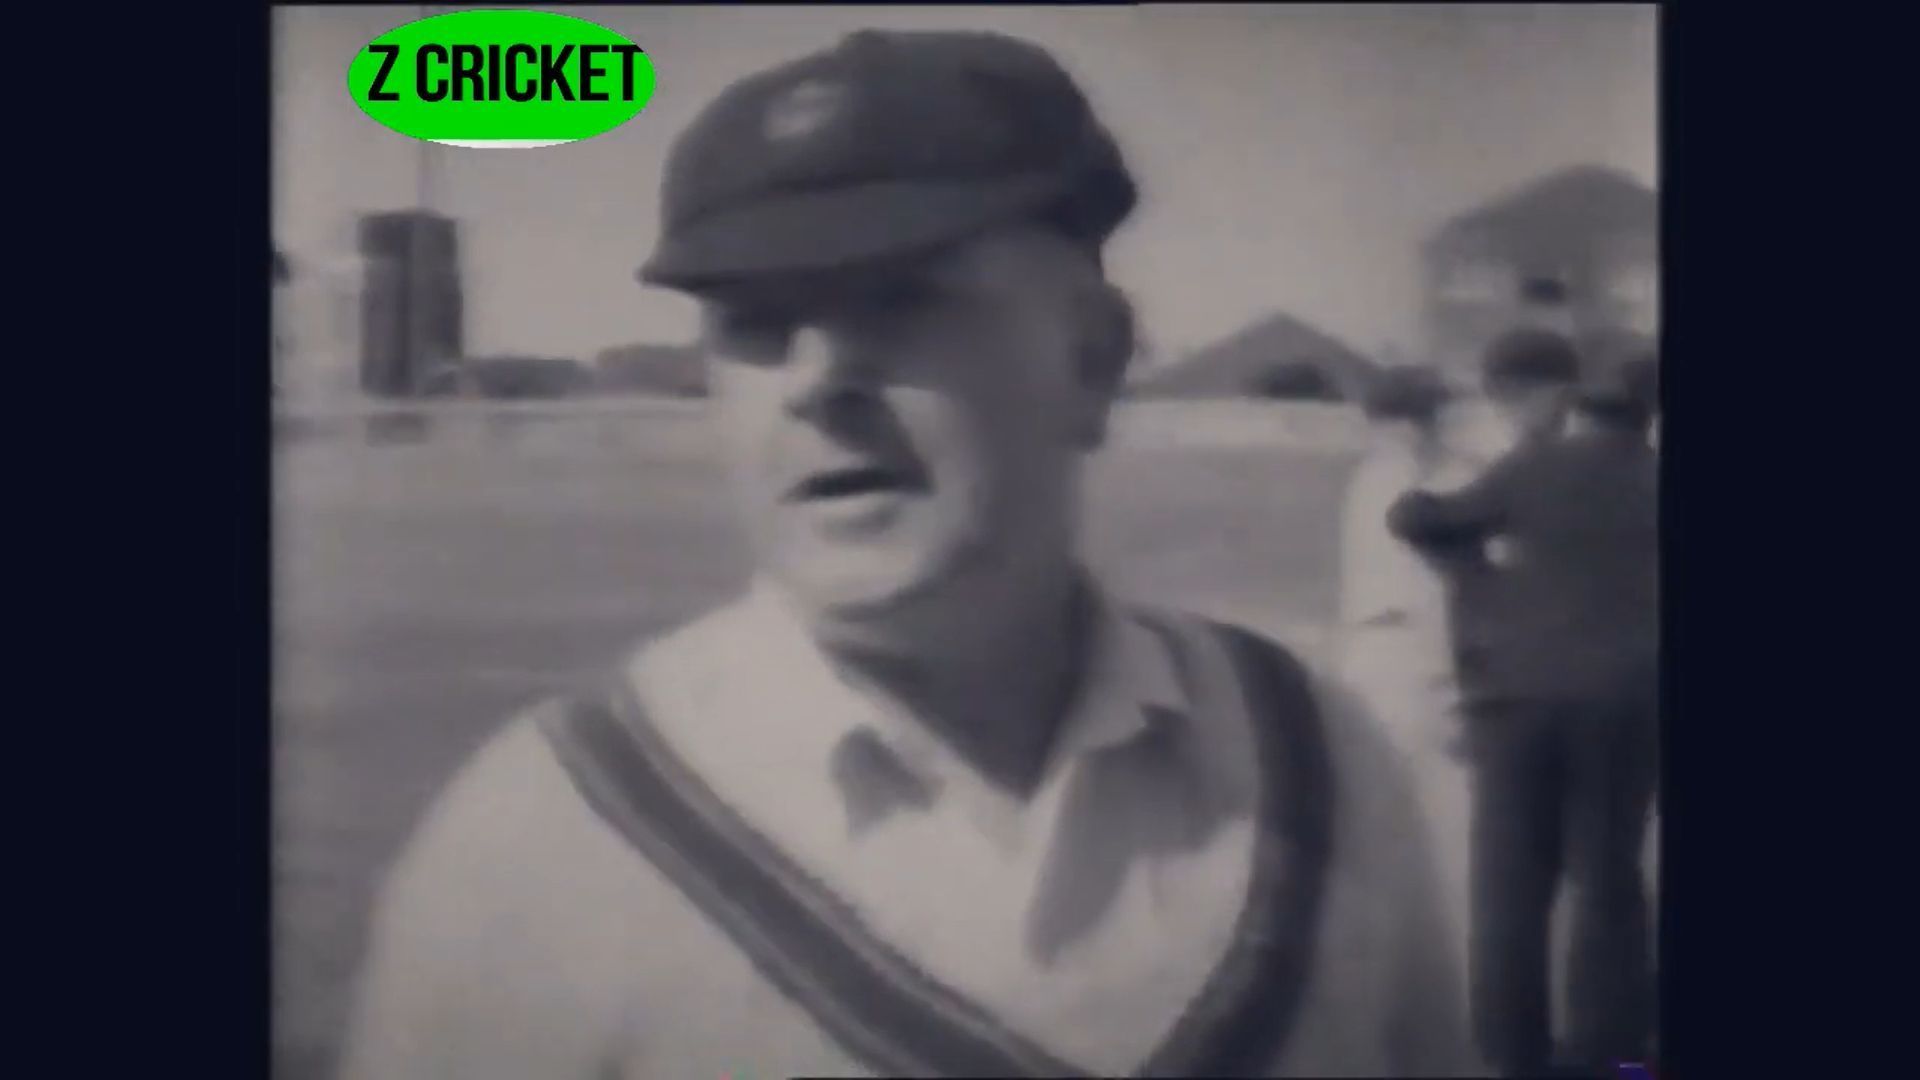 Charles Macartney (Image: YouTube/ Z cricket)